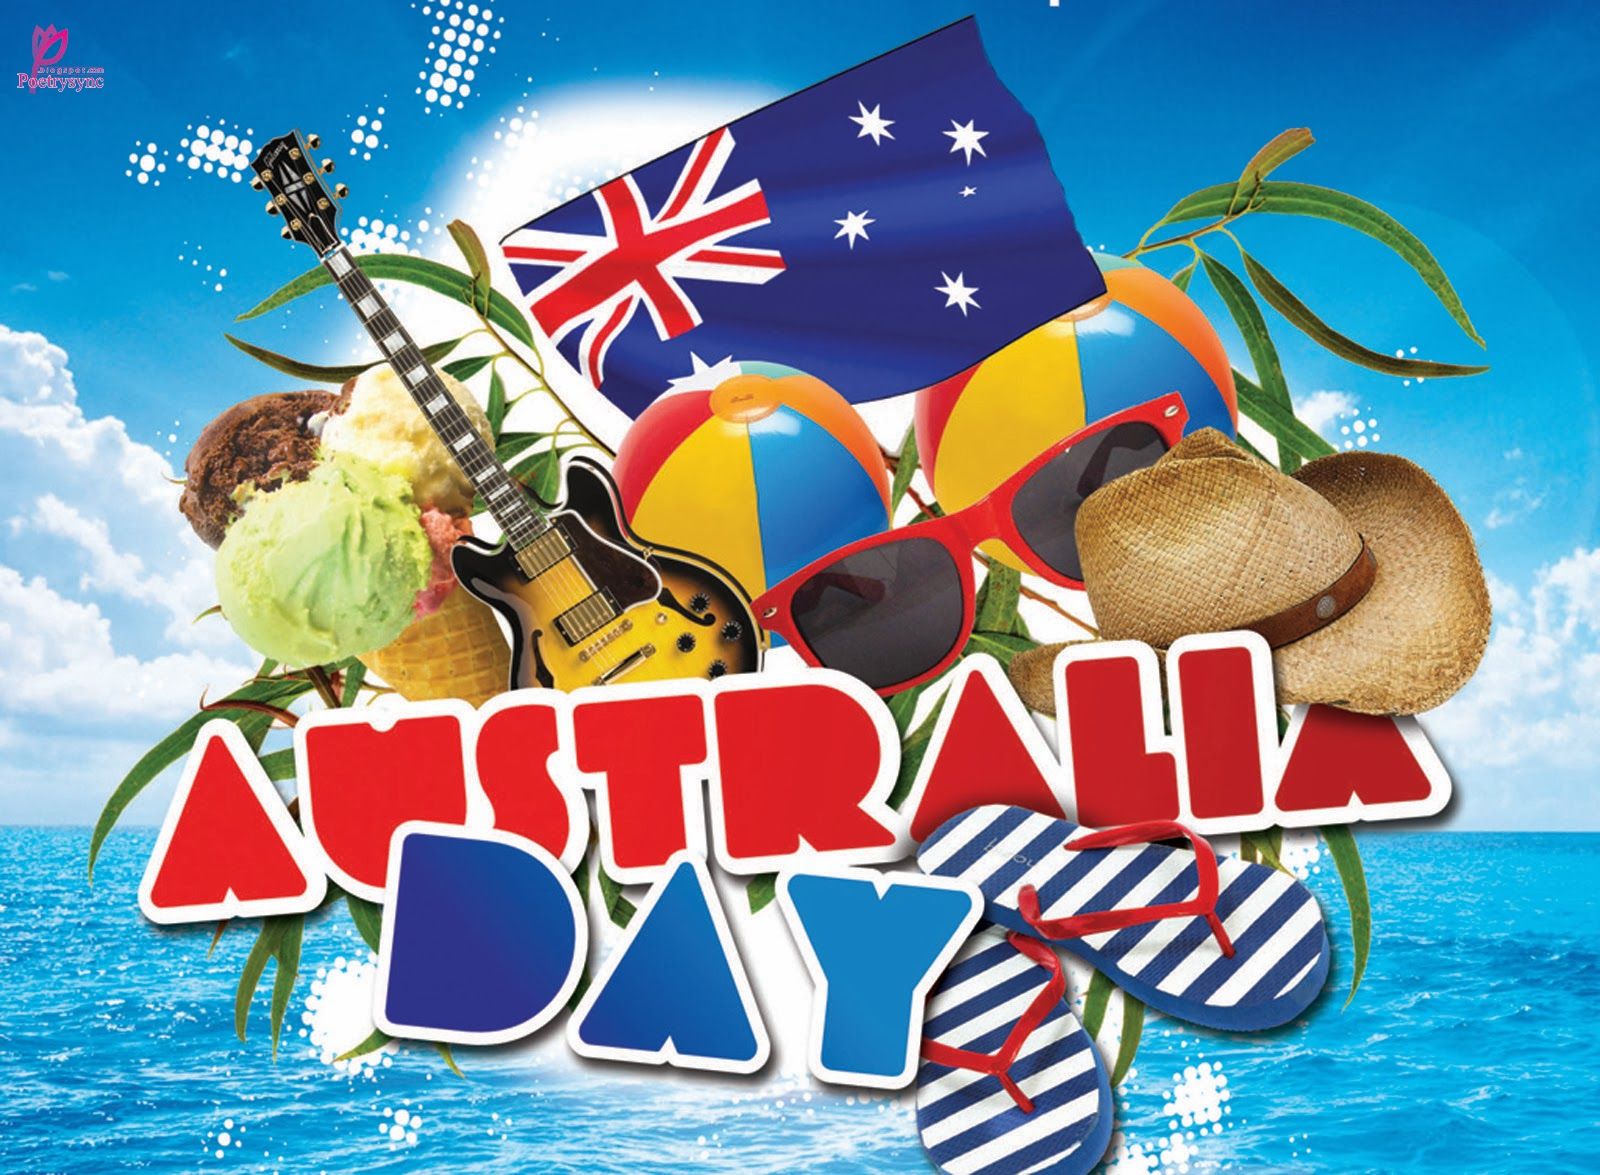 AUSTRALIA DAY ideas. australia day, australia, happy australia day